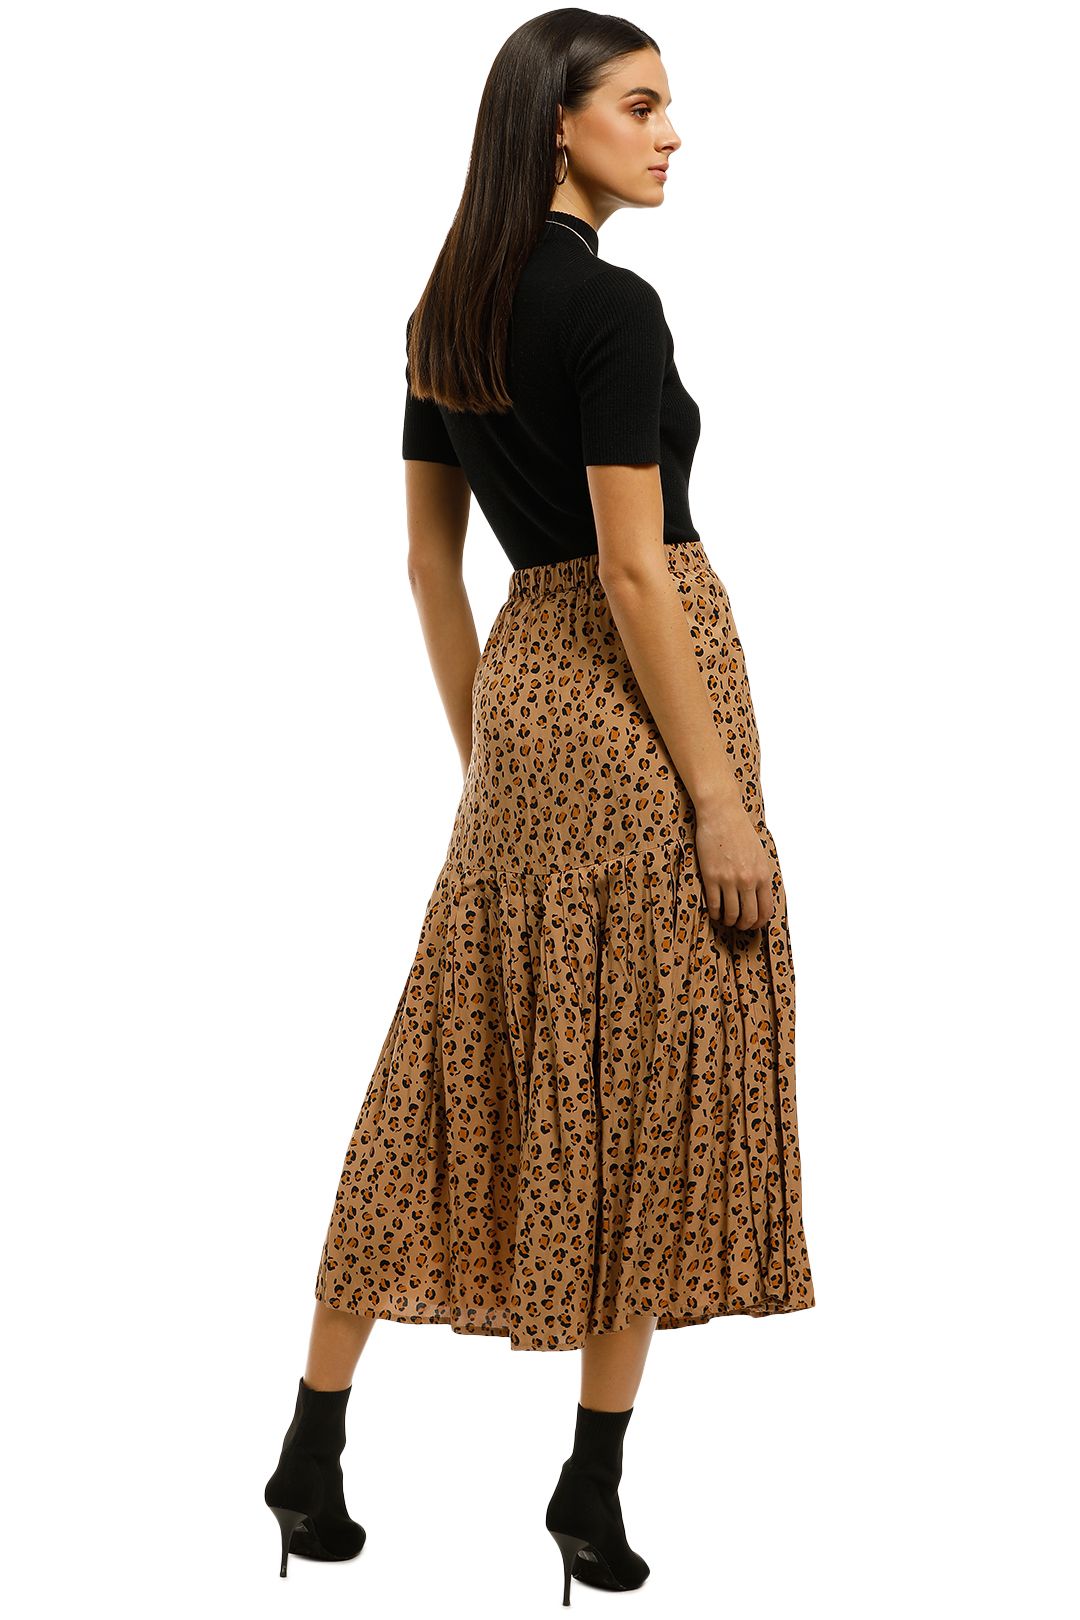 Rue-Stiic-Newport-Pleat-Skirt-Leopard-Back